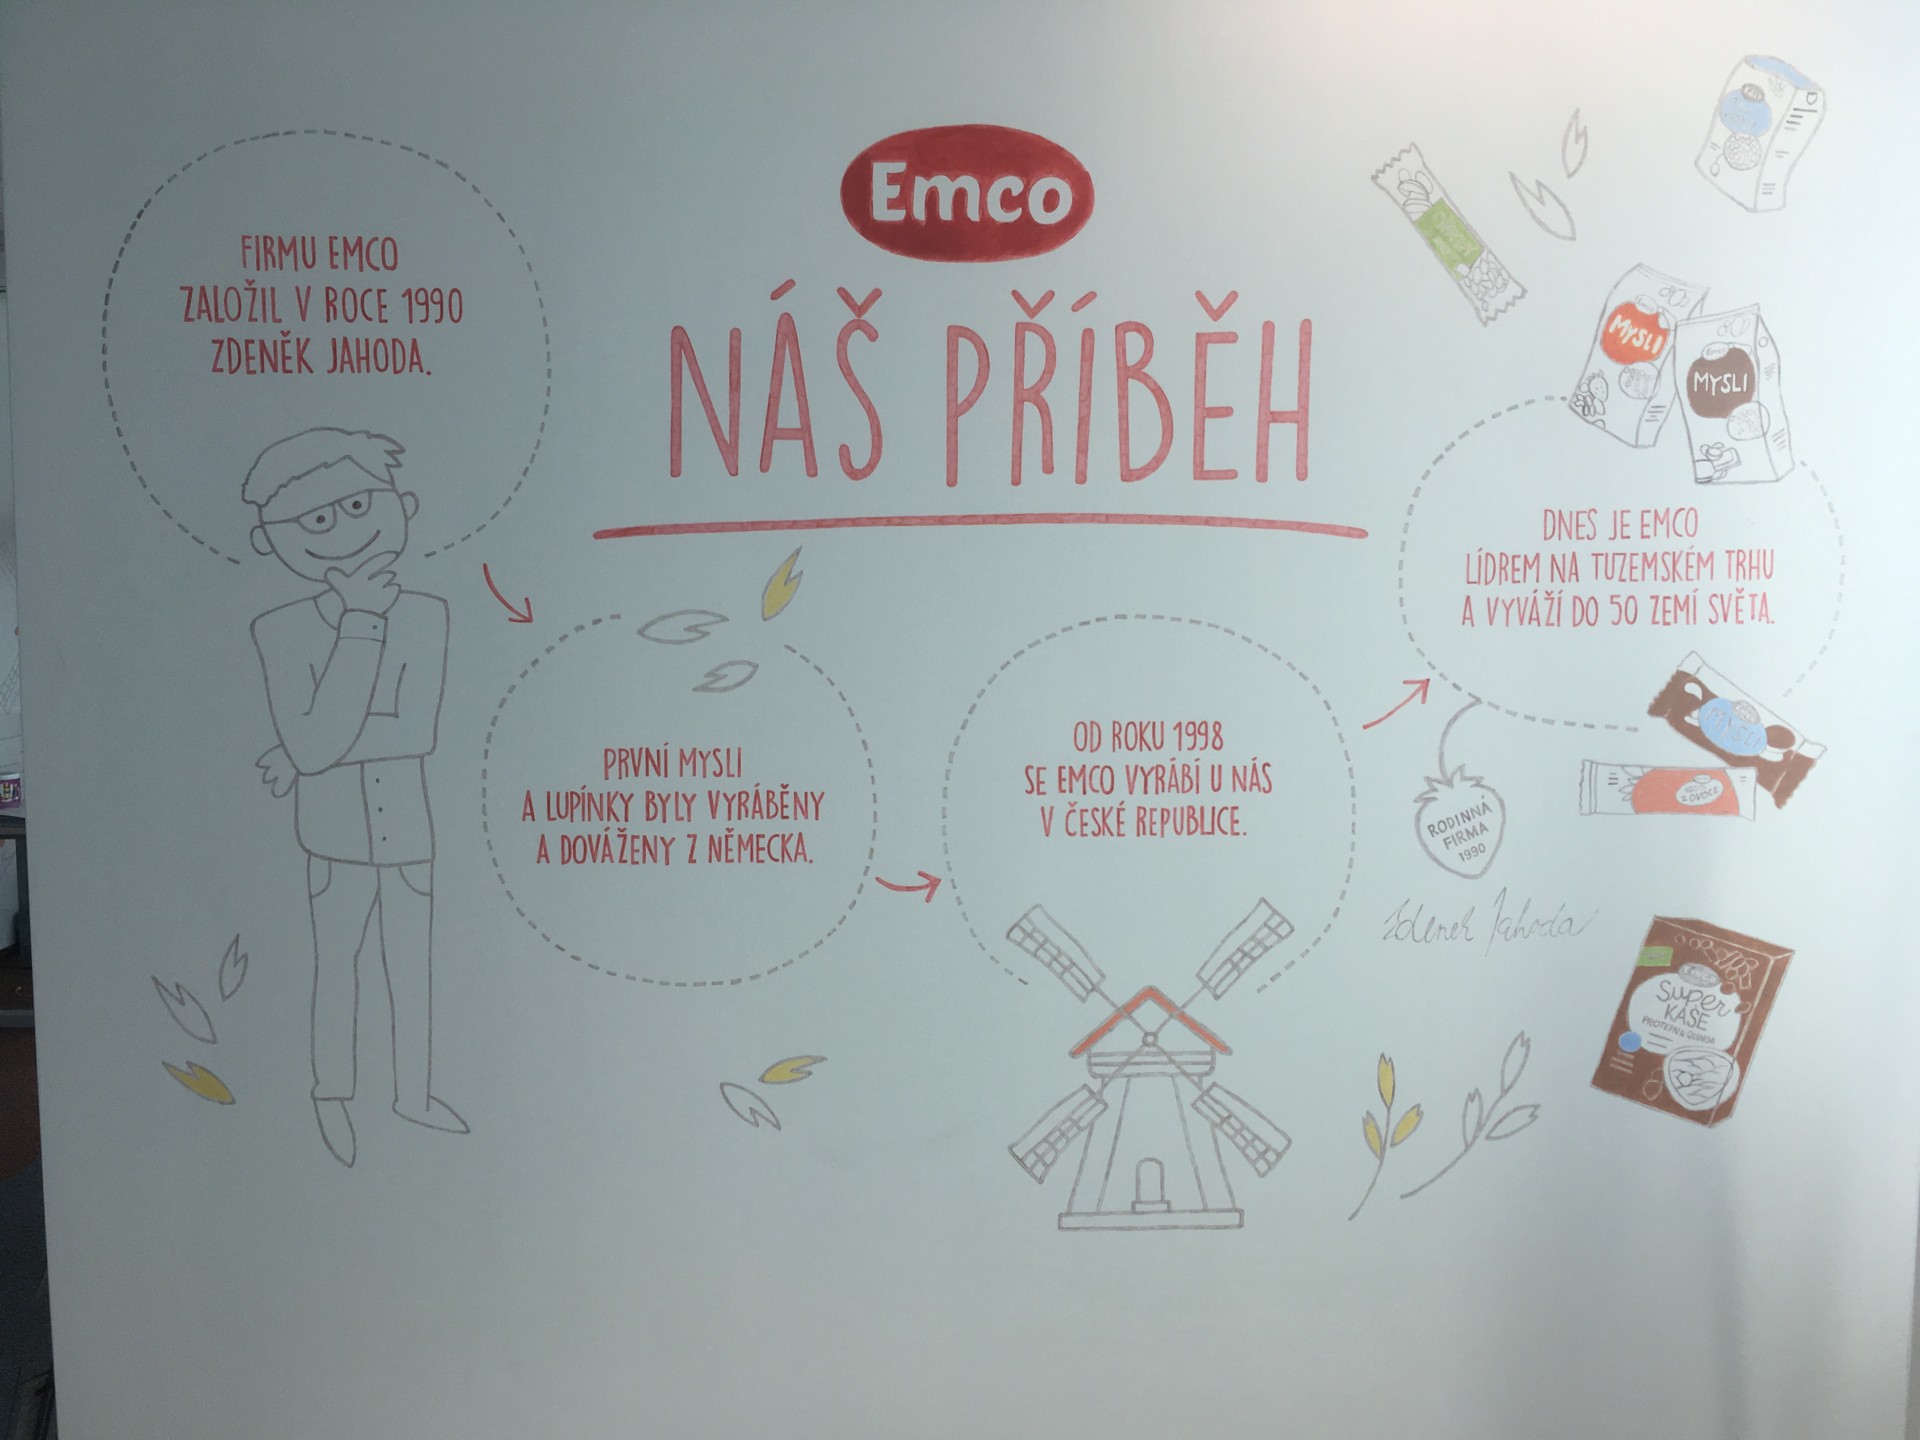 Ilustrace příběhu rodinné společnosti EMCO na pražské recepci 